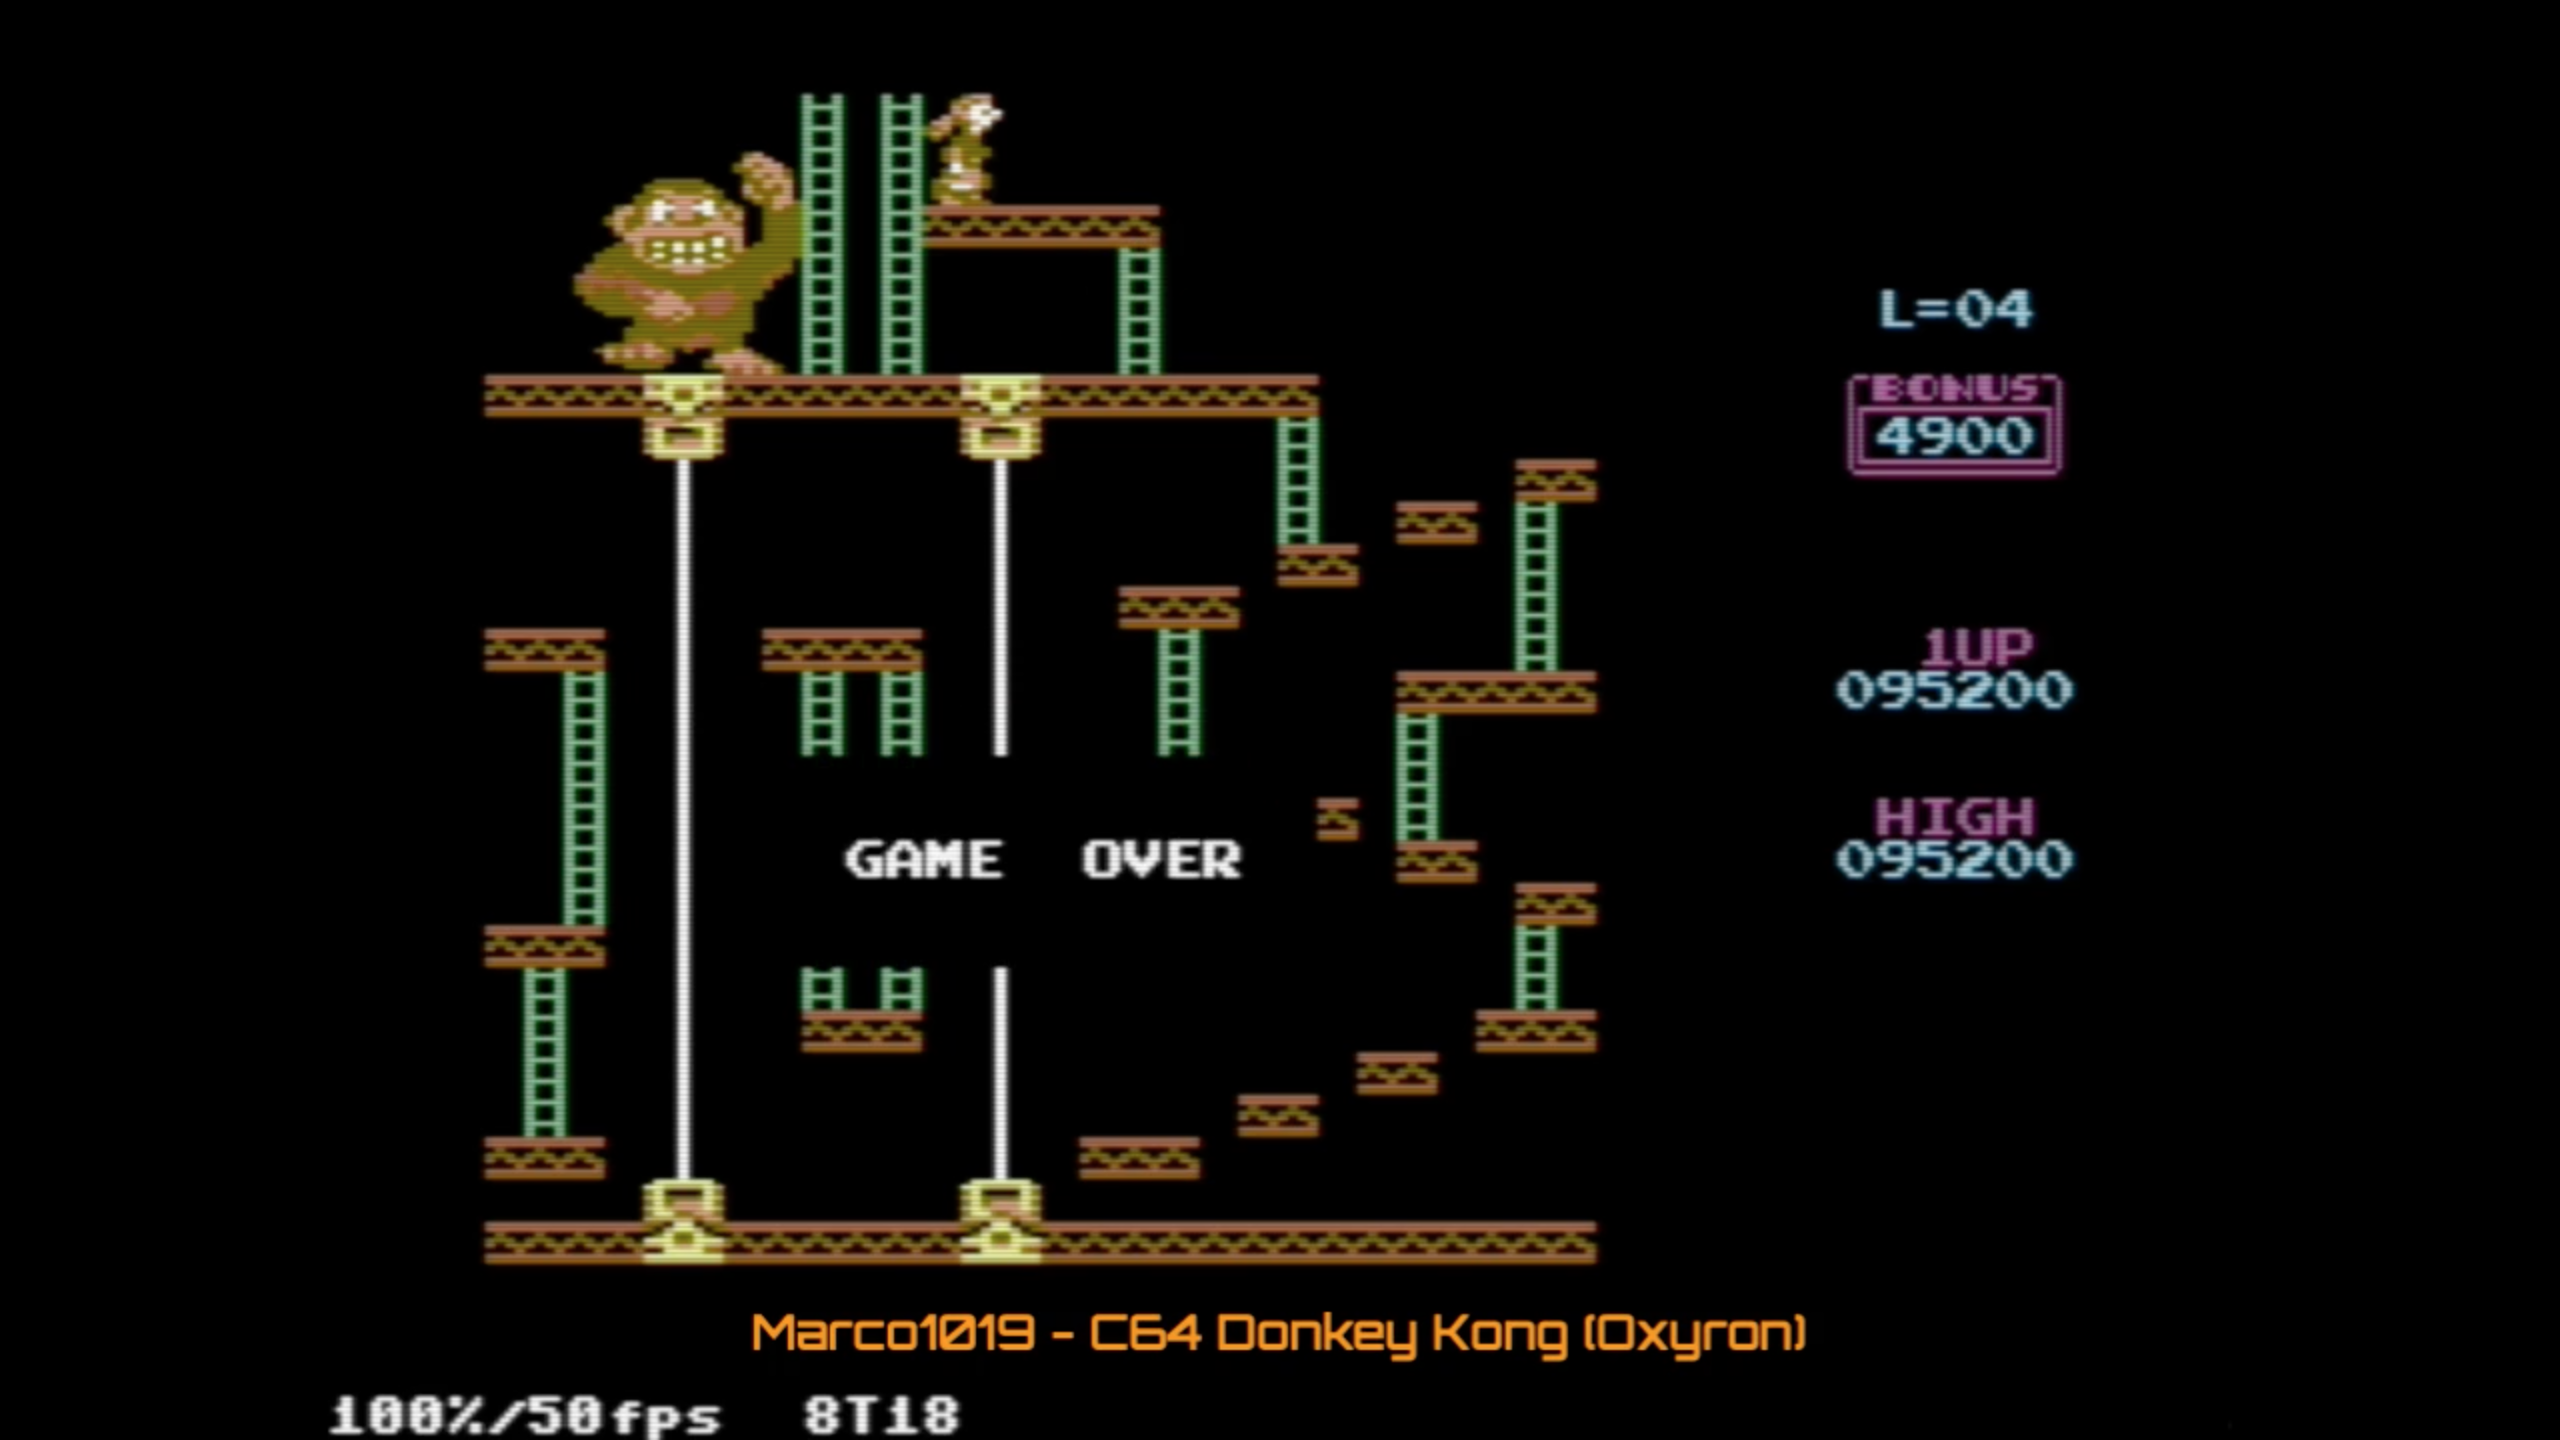 Donkey Kong 2016 95,200 points